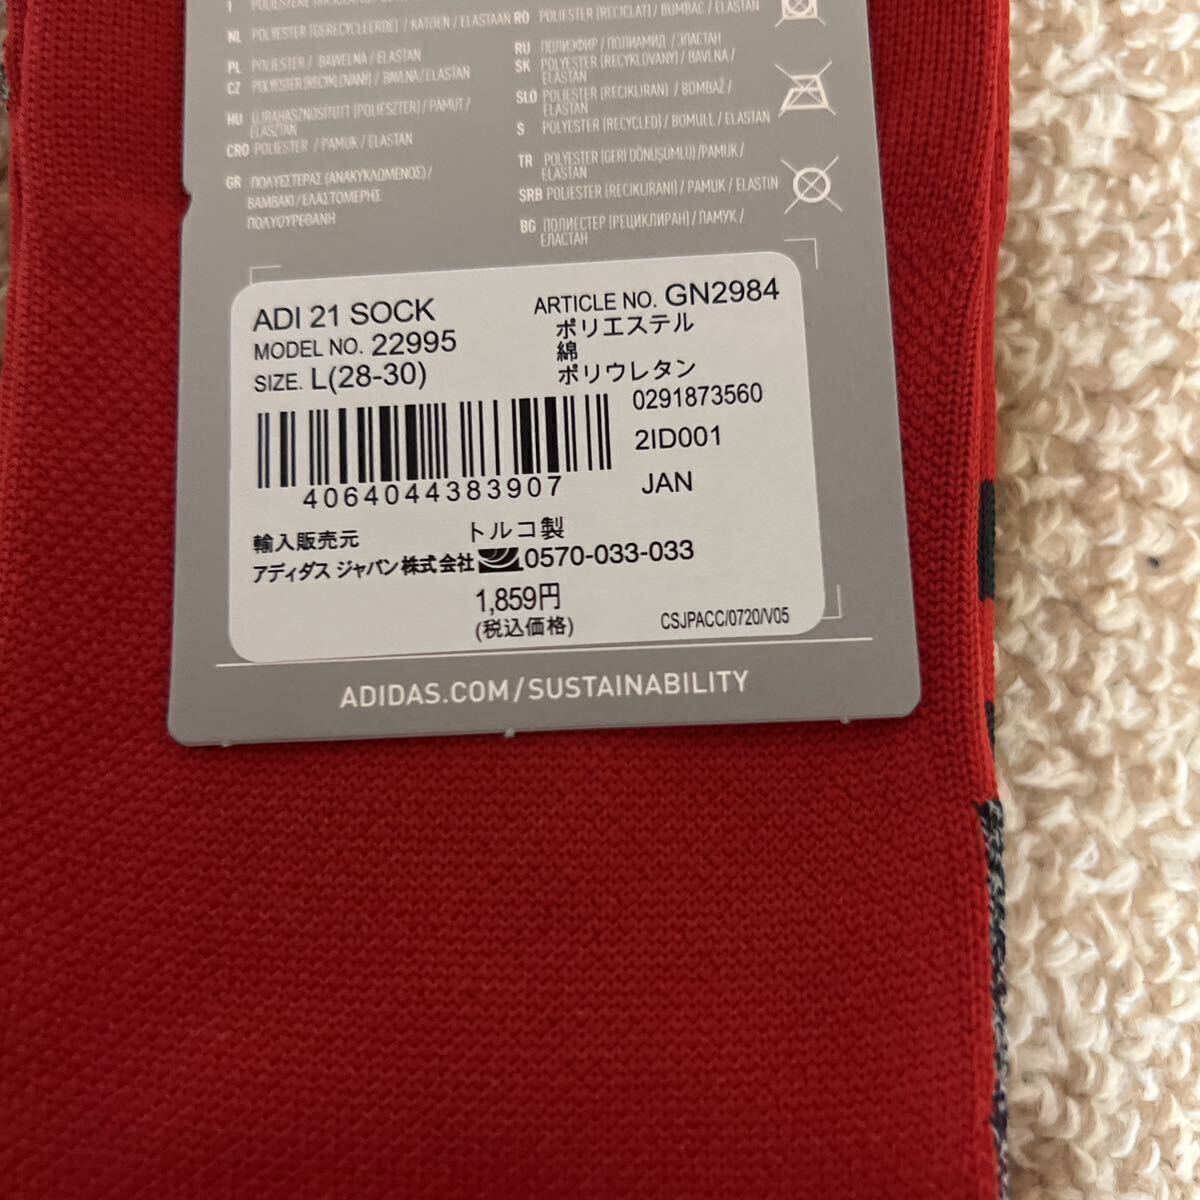  футбол носки Adidas a-4035